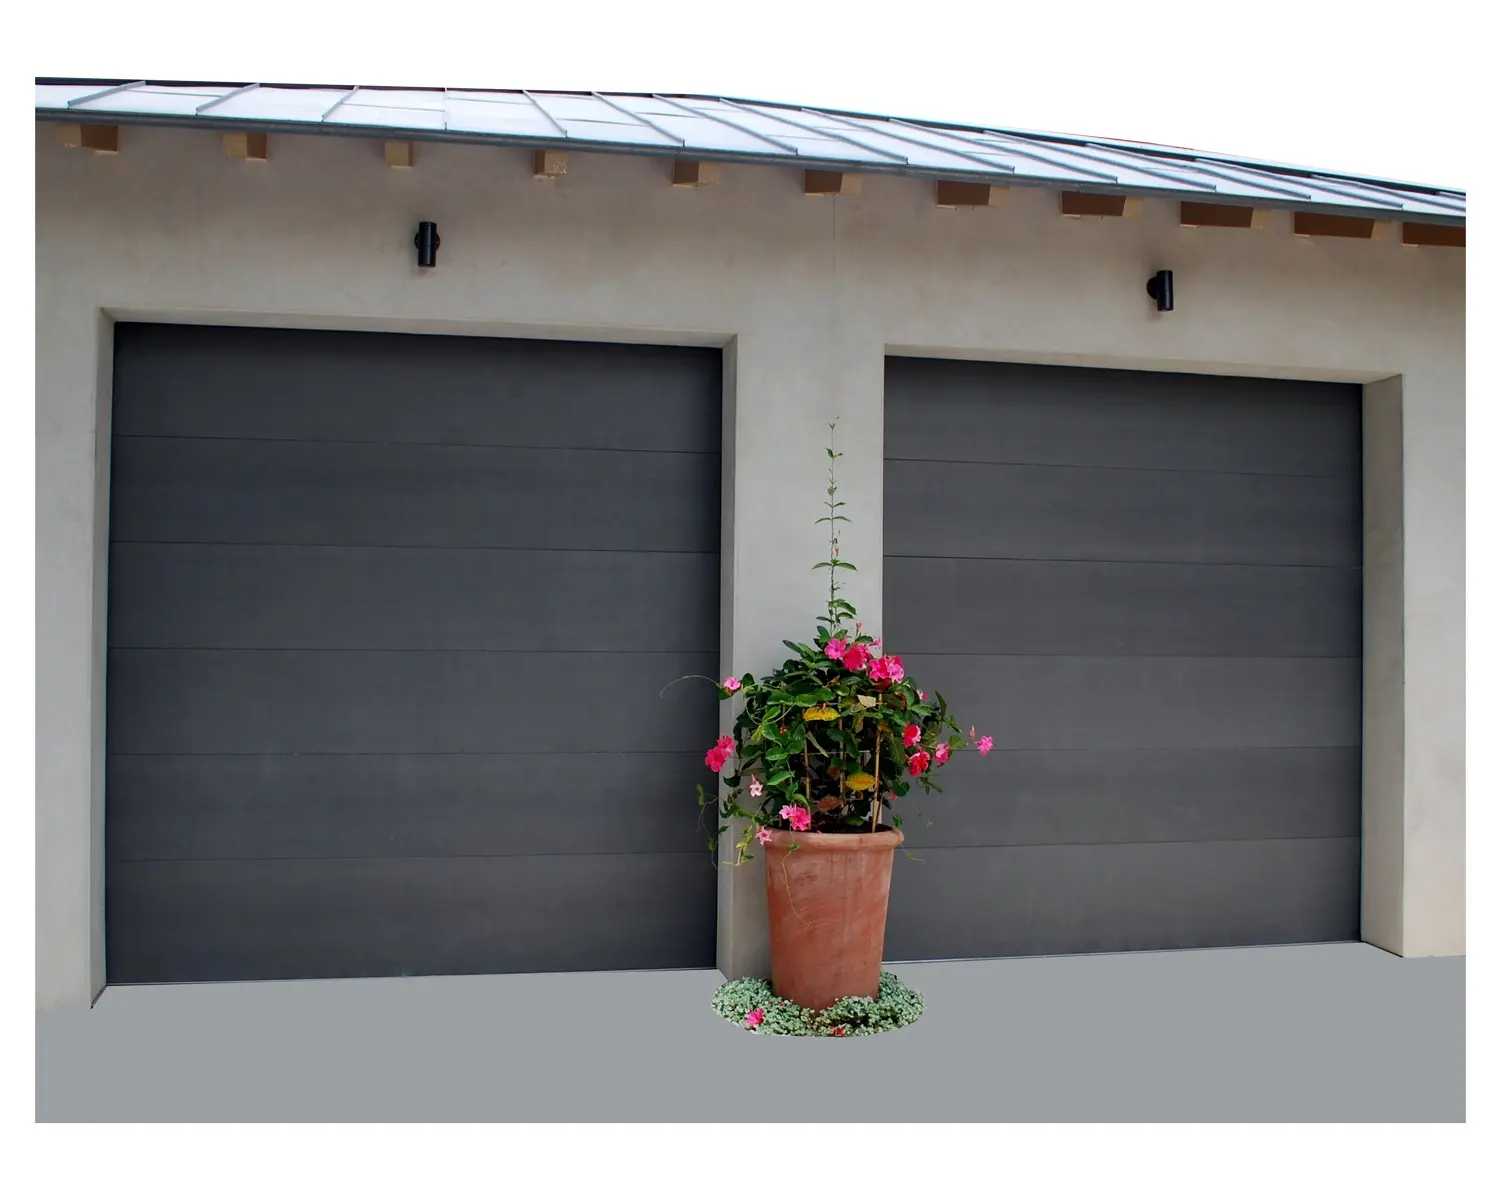 Секционные гаражные двери 8x7, стальные накладные изолированные металлические алюминиевые панели для раздвижных складных гаражных дверей, цены